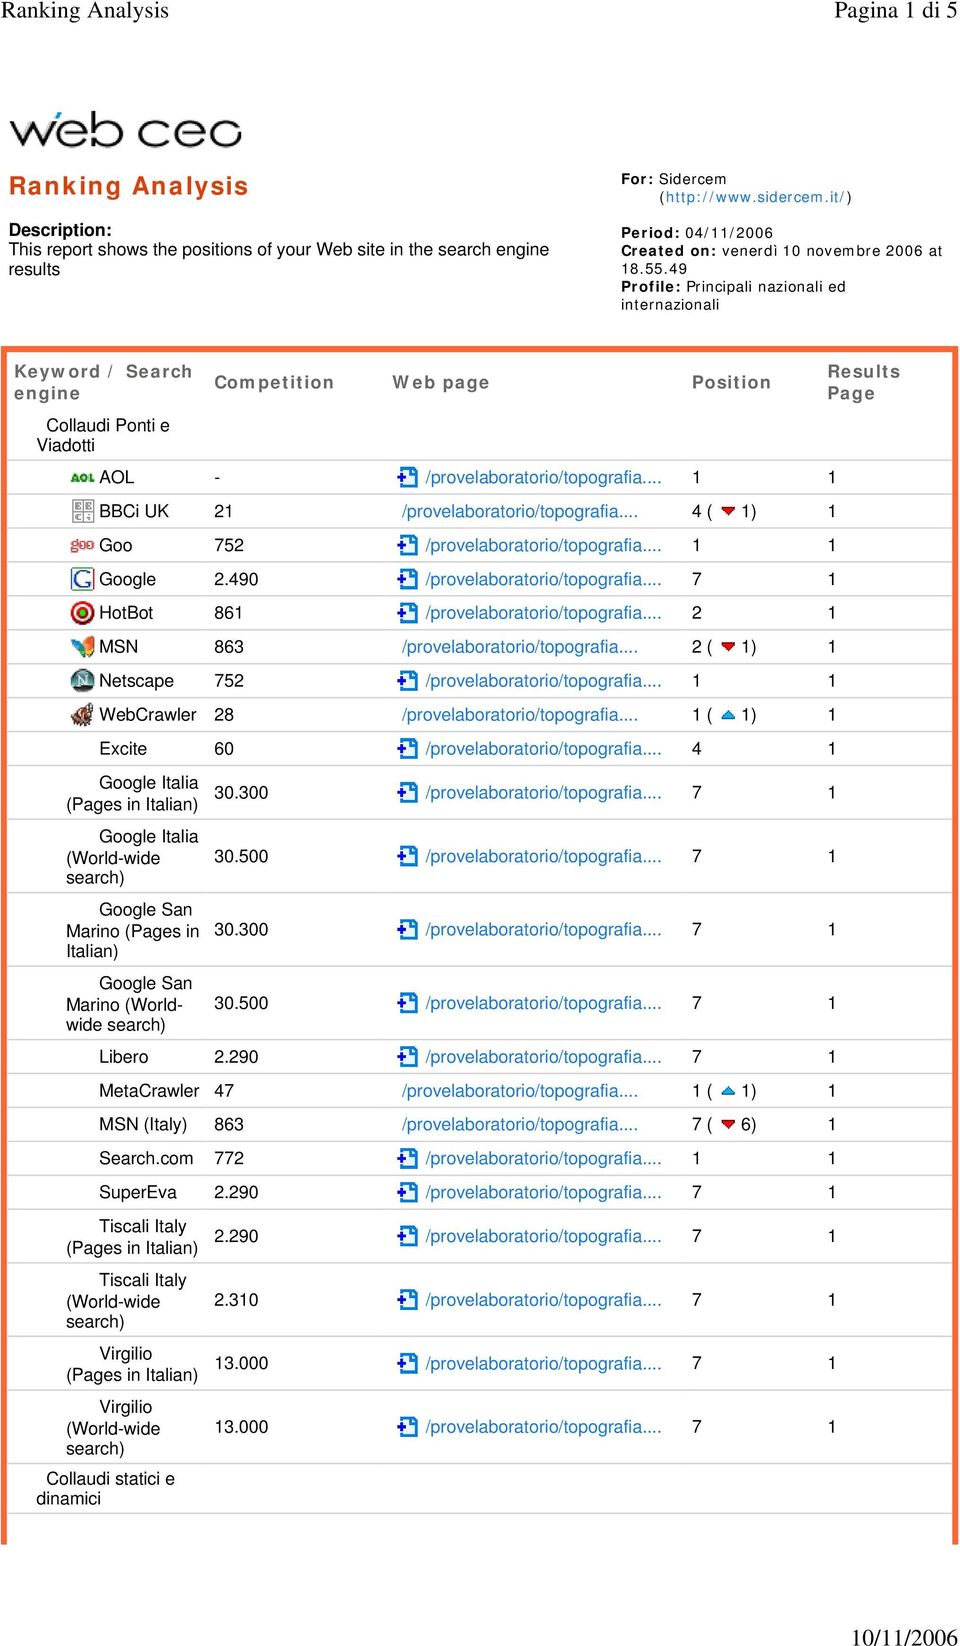 49 Profile: Principali nazionali ed internazionali Keyword / Search engine Collaudi Ponti e Viadotti Competition Web page Position AOL - /provelaboratorio/topografia.